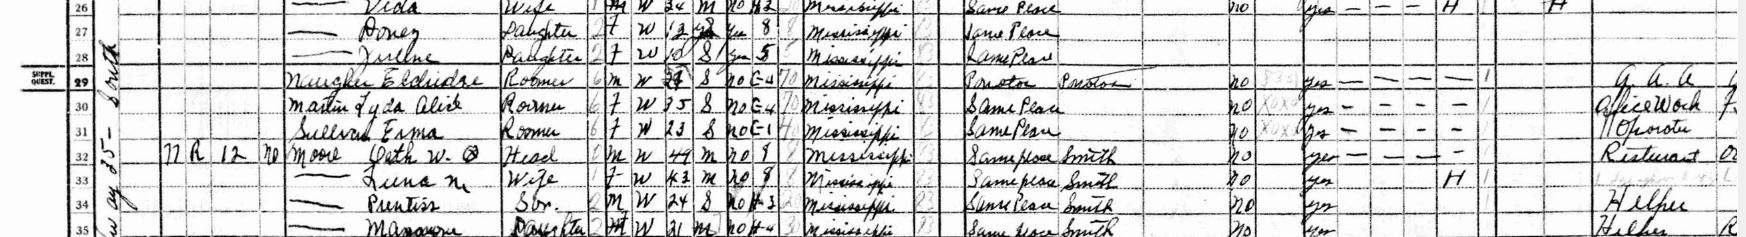 Naugher eldridre census1940